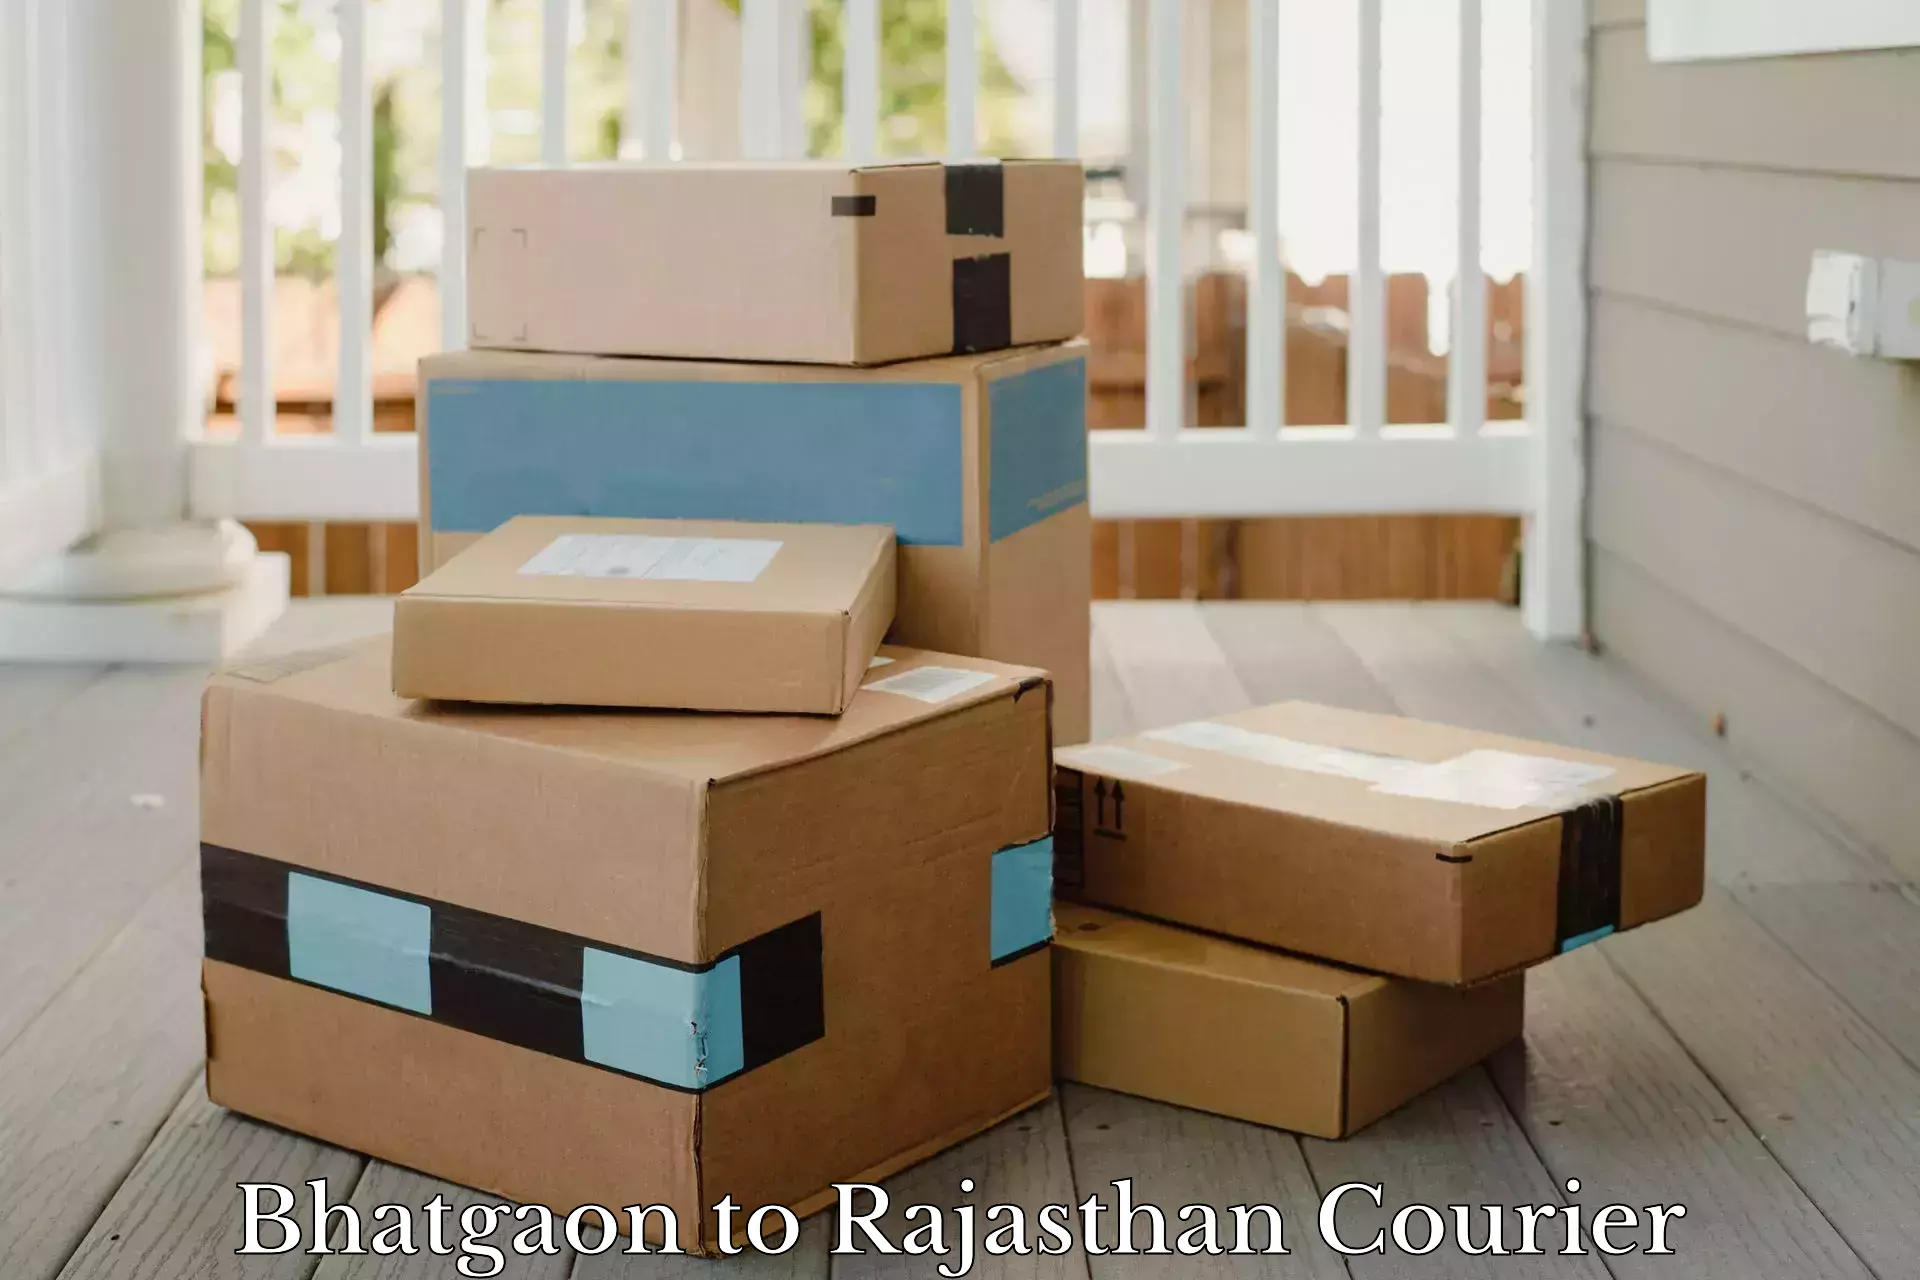 24-hour courier service Bhatgaon to Falna